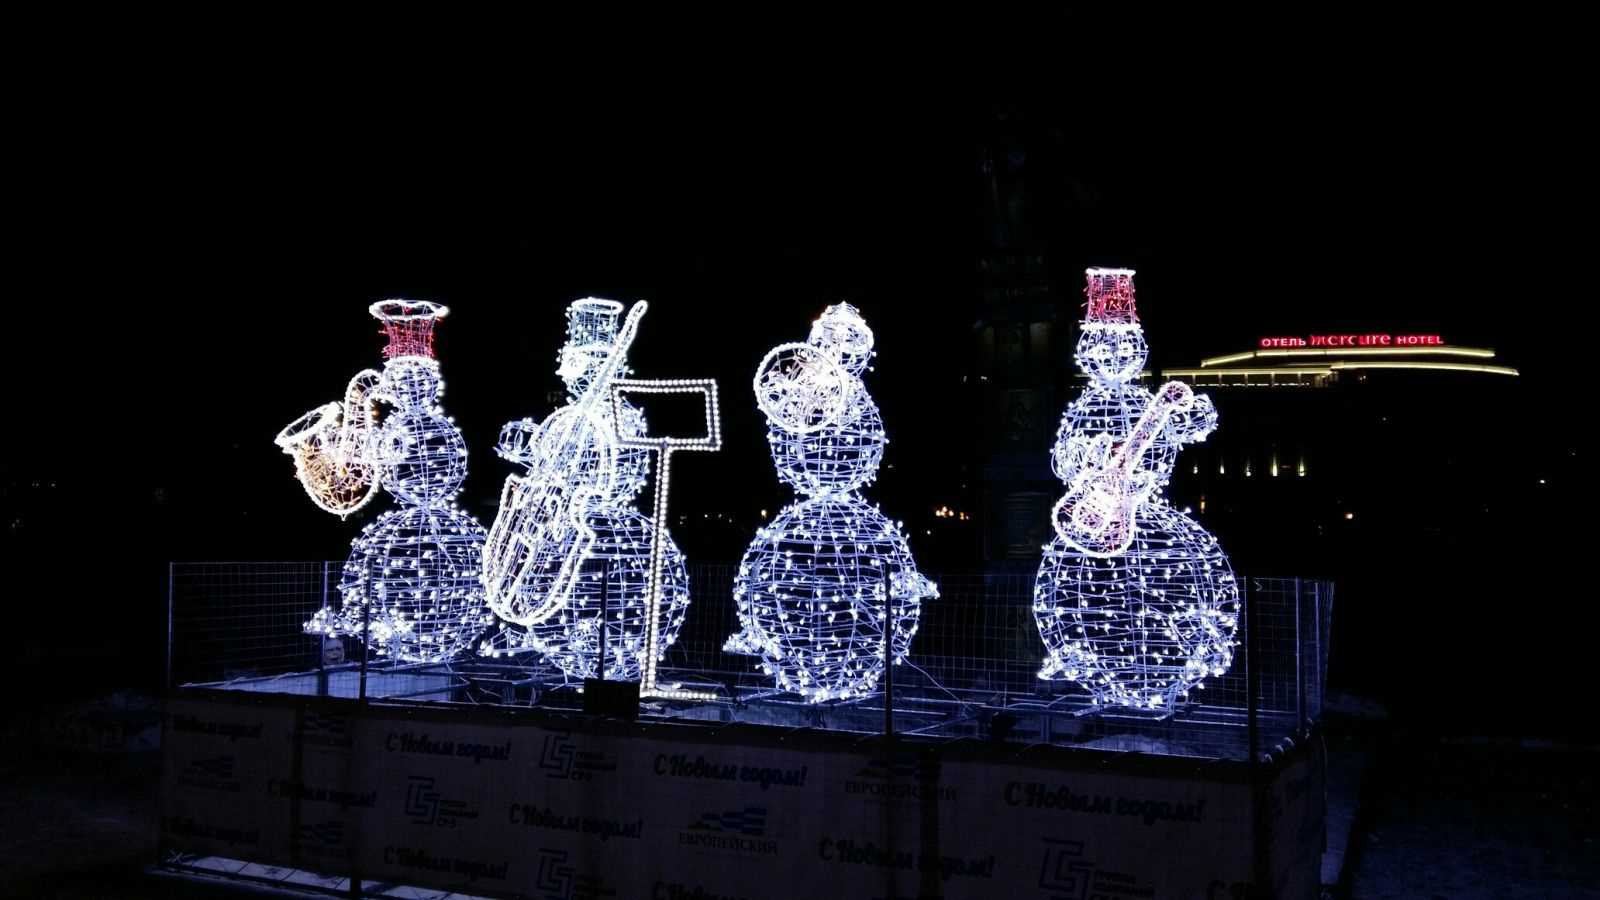 Фотография.  На темном фоне,  в центре стоят 4 фигуры снеговиков – музыкантов. Снеговики сделаны из гирлянд и светятся, у каждого из них свой инструмент . Слева направо – саксофон,  виолончель, труба и гитара. Перед фигурами стоит пюпитр. Снеговики стоят на  невысоком постаменте и огорожены сеткой.  На заднем плане светится вывеска гостиницы «Mercure».